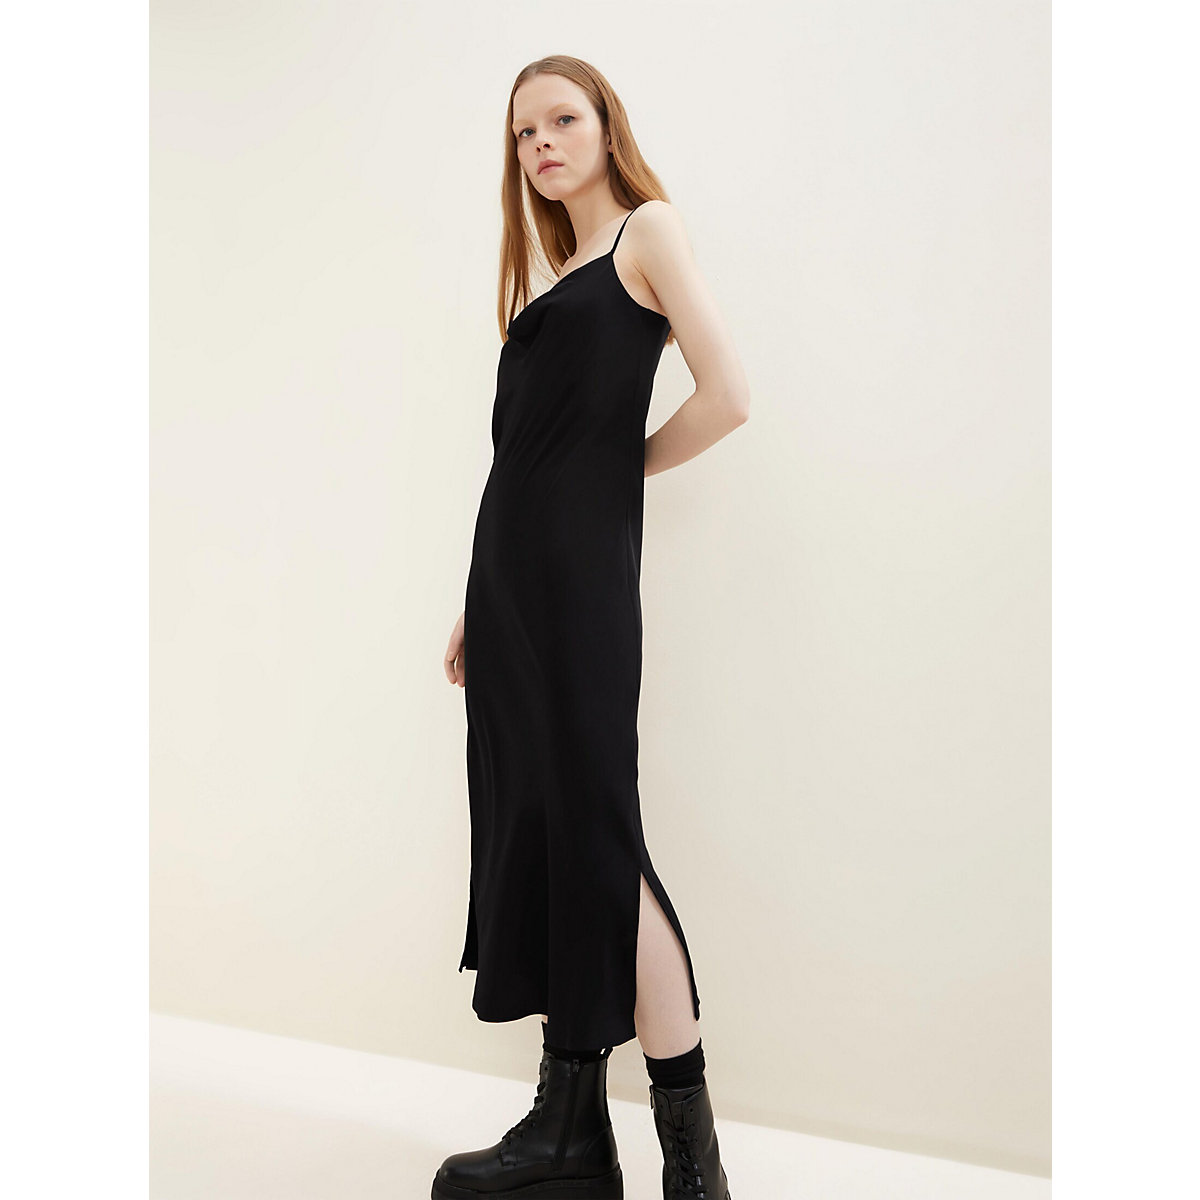 TOM TAILOR Denim Kleider & Jumpsuits Satinkleid mit Wasserfallausschnitt Jerseykleider schwarz